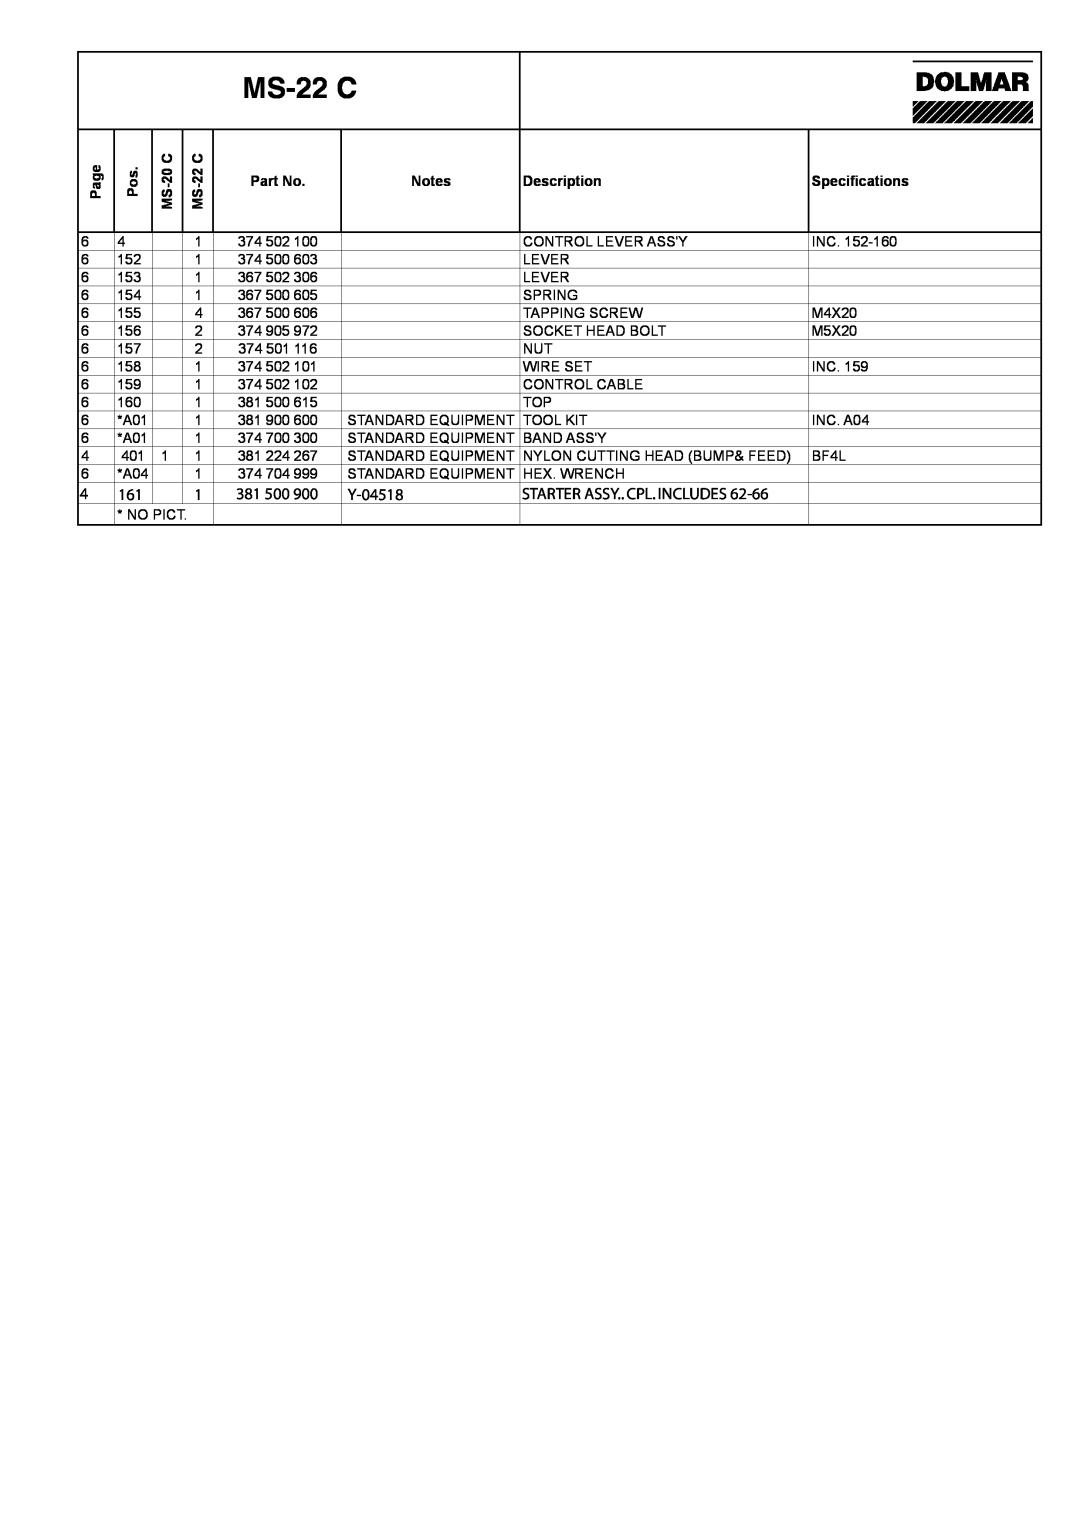 Dolmar MS-20 C manual MS-22 C, 381 500, Y-04518, Page, Description, Specifications 